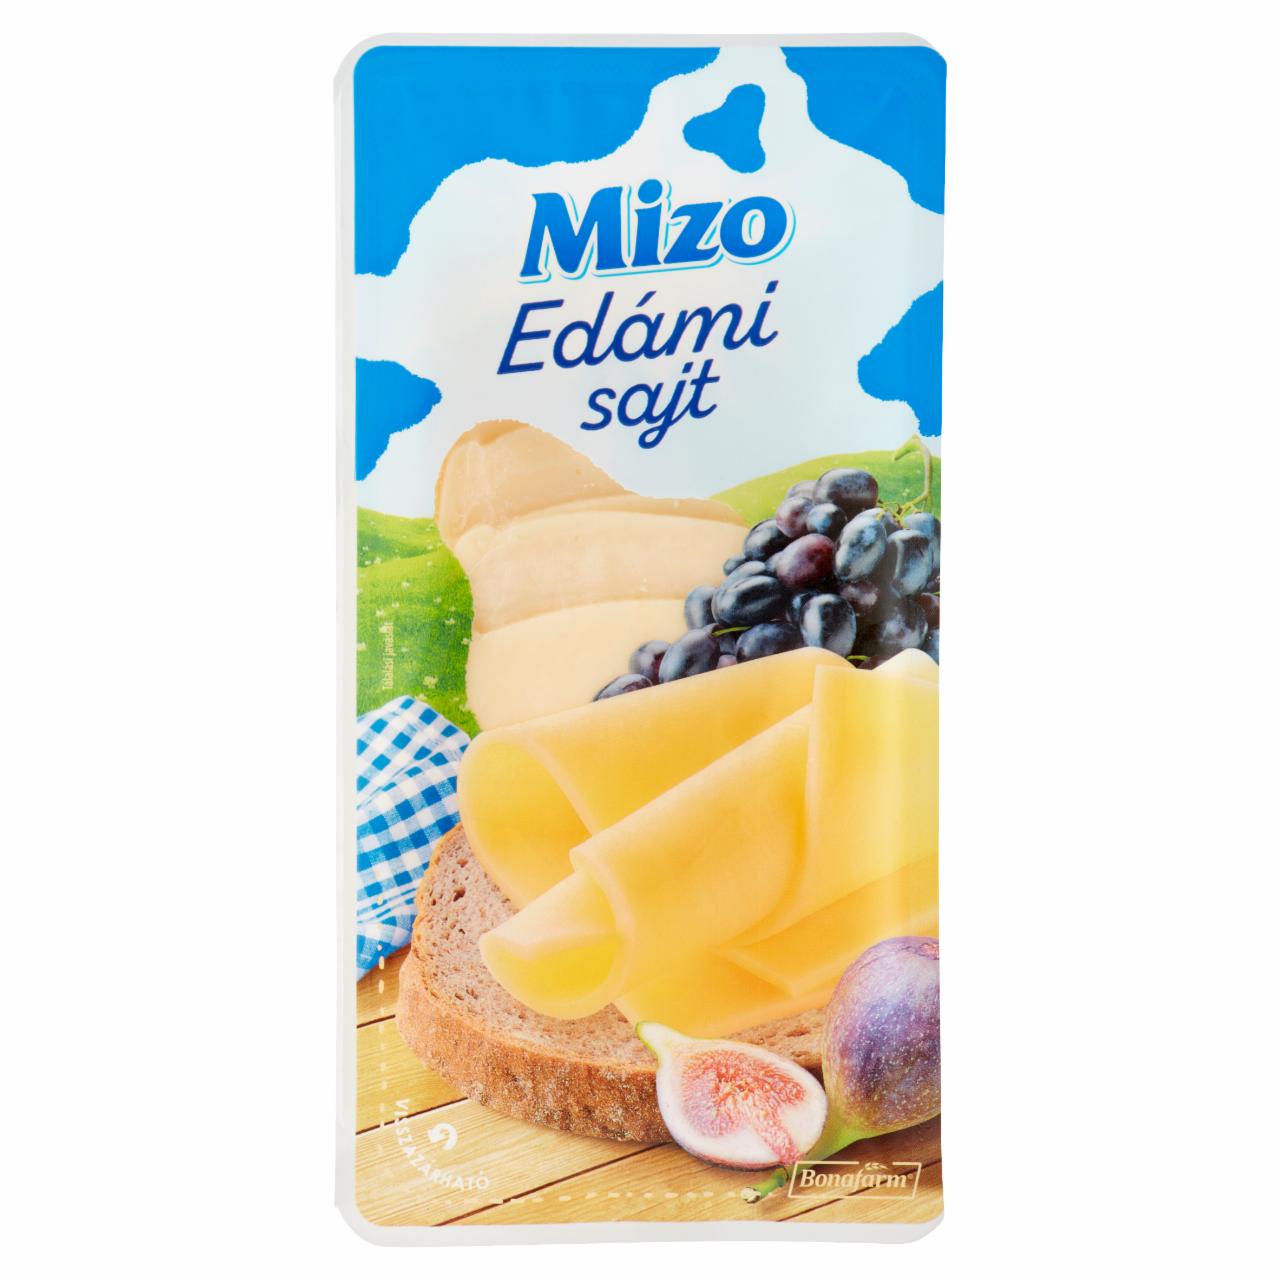 Képek - Mizo szeletelt edámi sajt 125 g